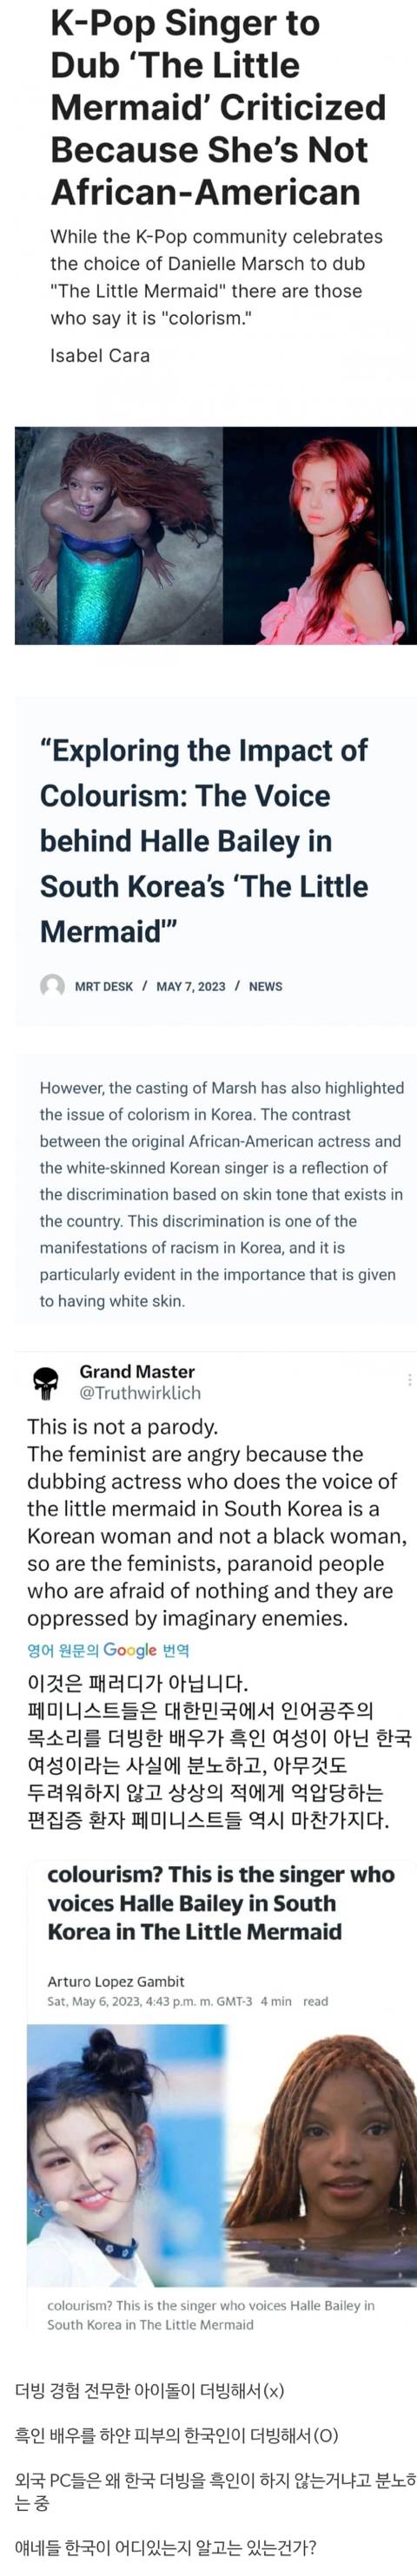 해외 PC애들은 "한국은 인어공주 더빙을 흑인이 하지 않았다!!" 라면서 분노중이라는데 | 인스티즈